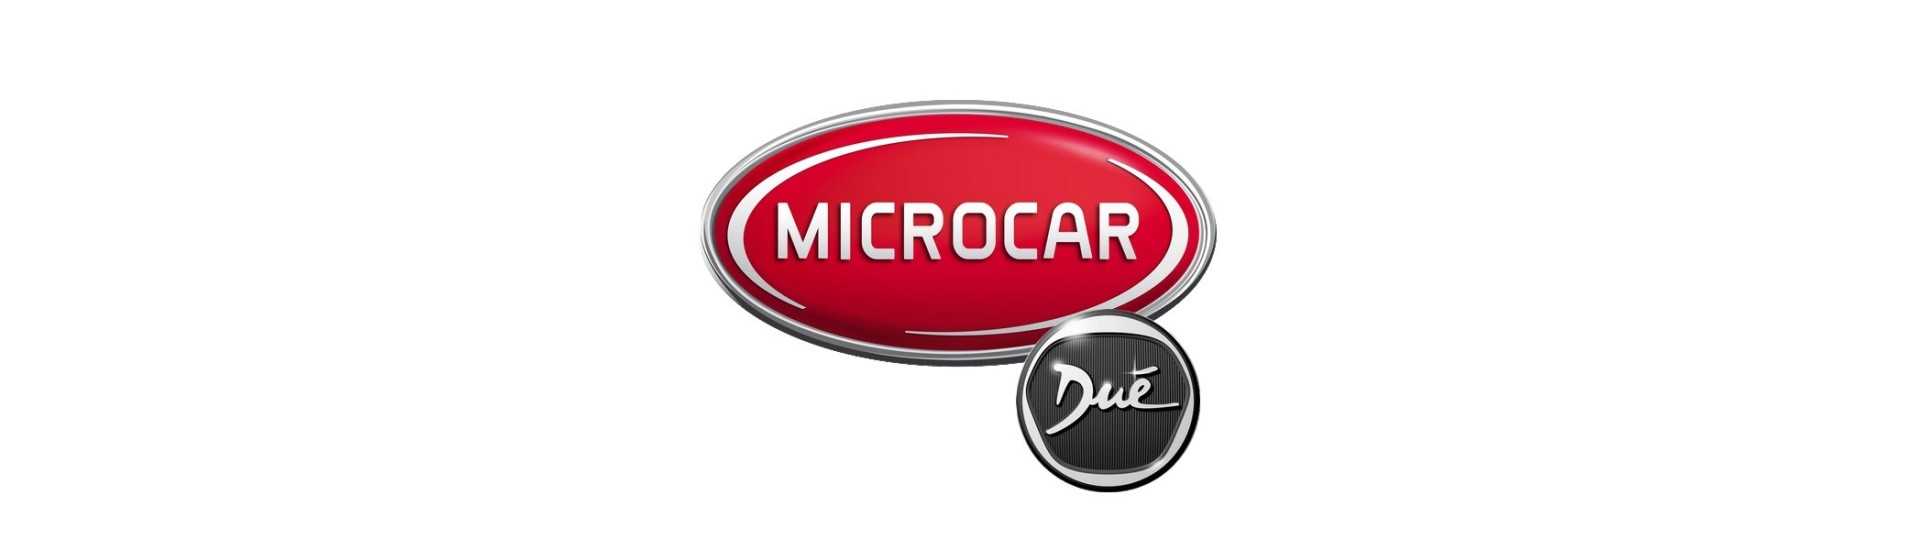 Kiihdytinkaapeli parhaalla hinnalla ilman lupaa Microcar Dué